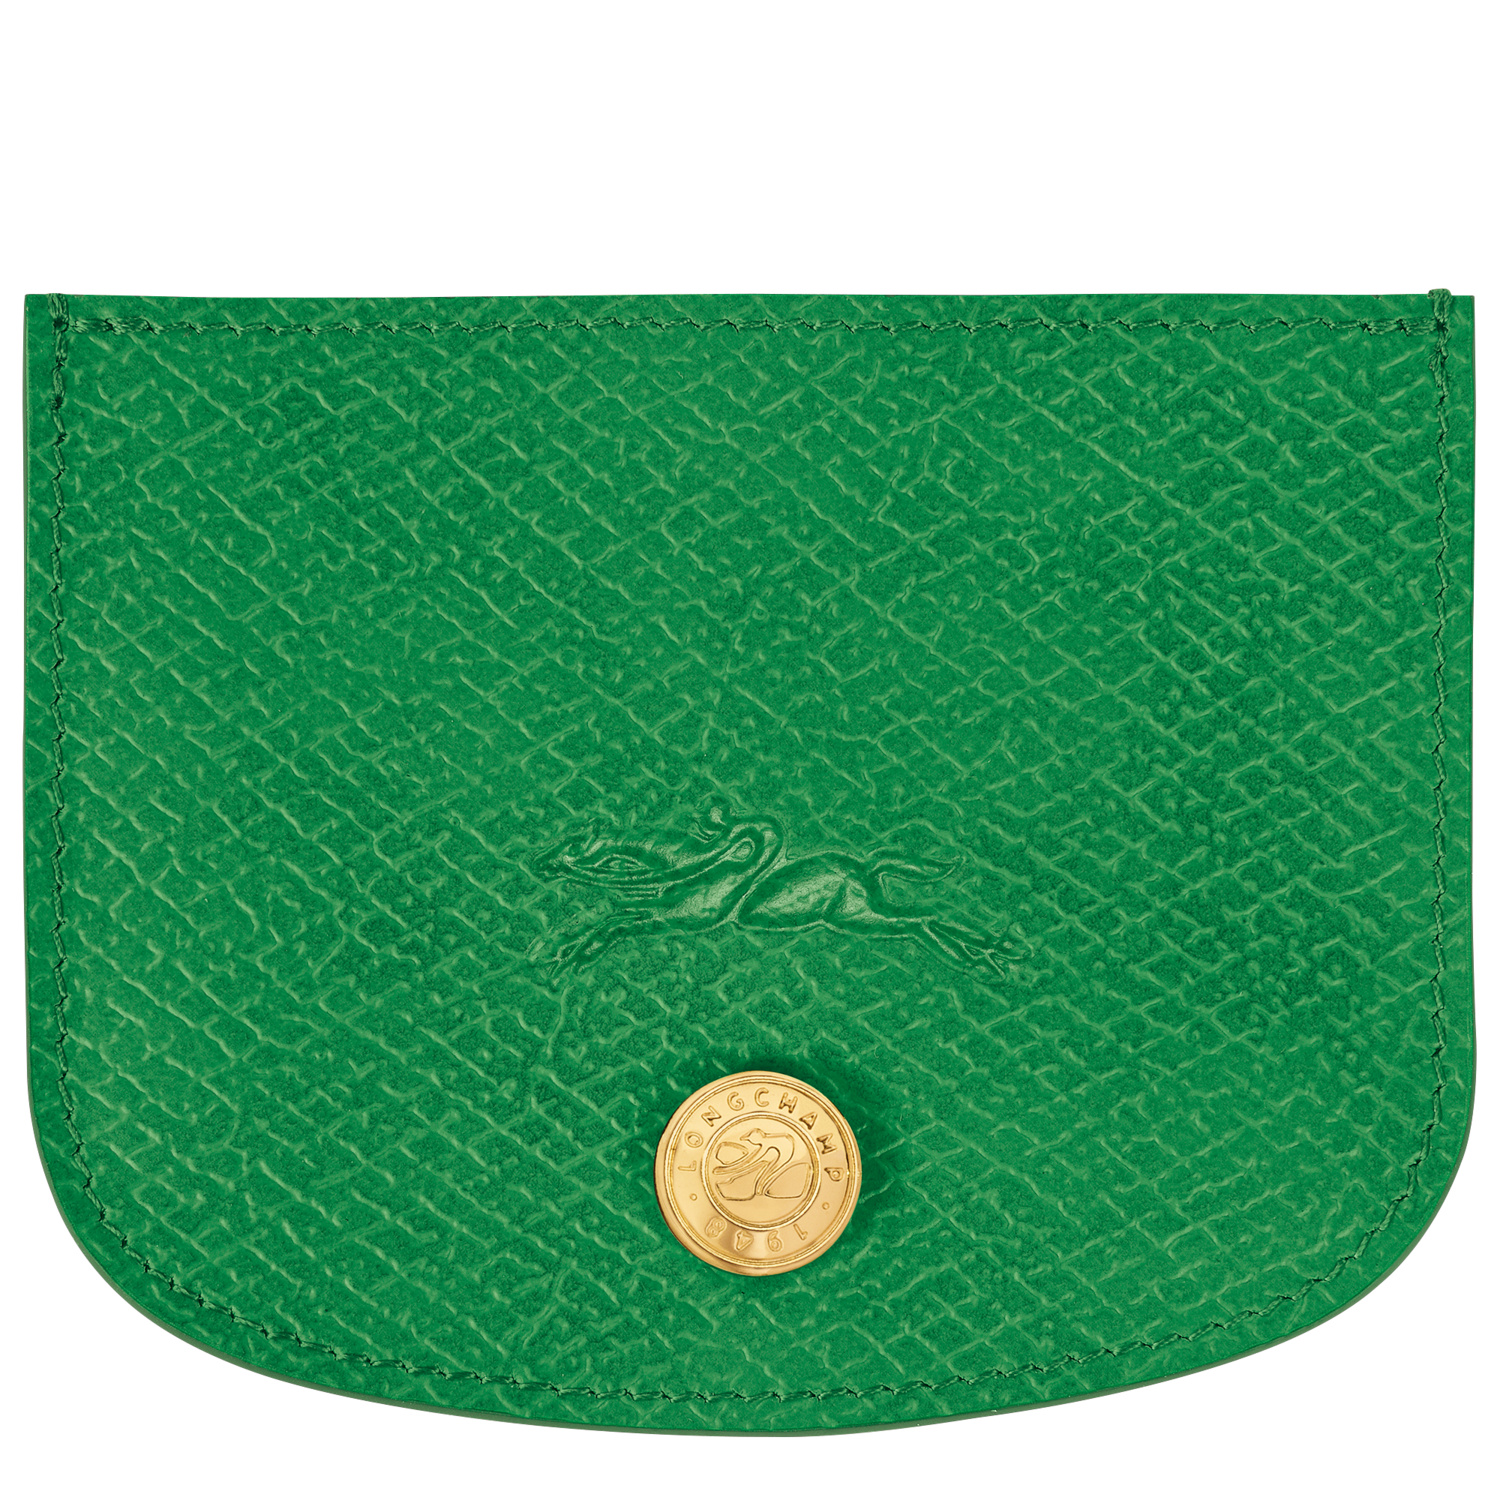 Longchamp Porte-cartes Épure In Green